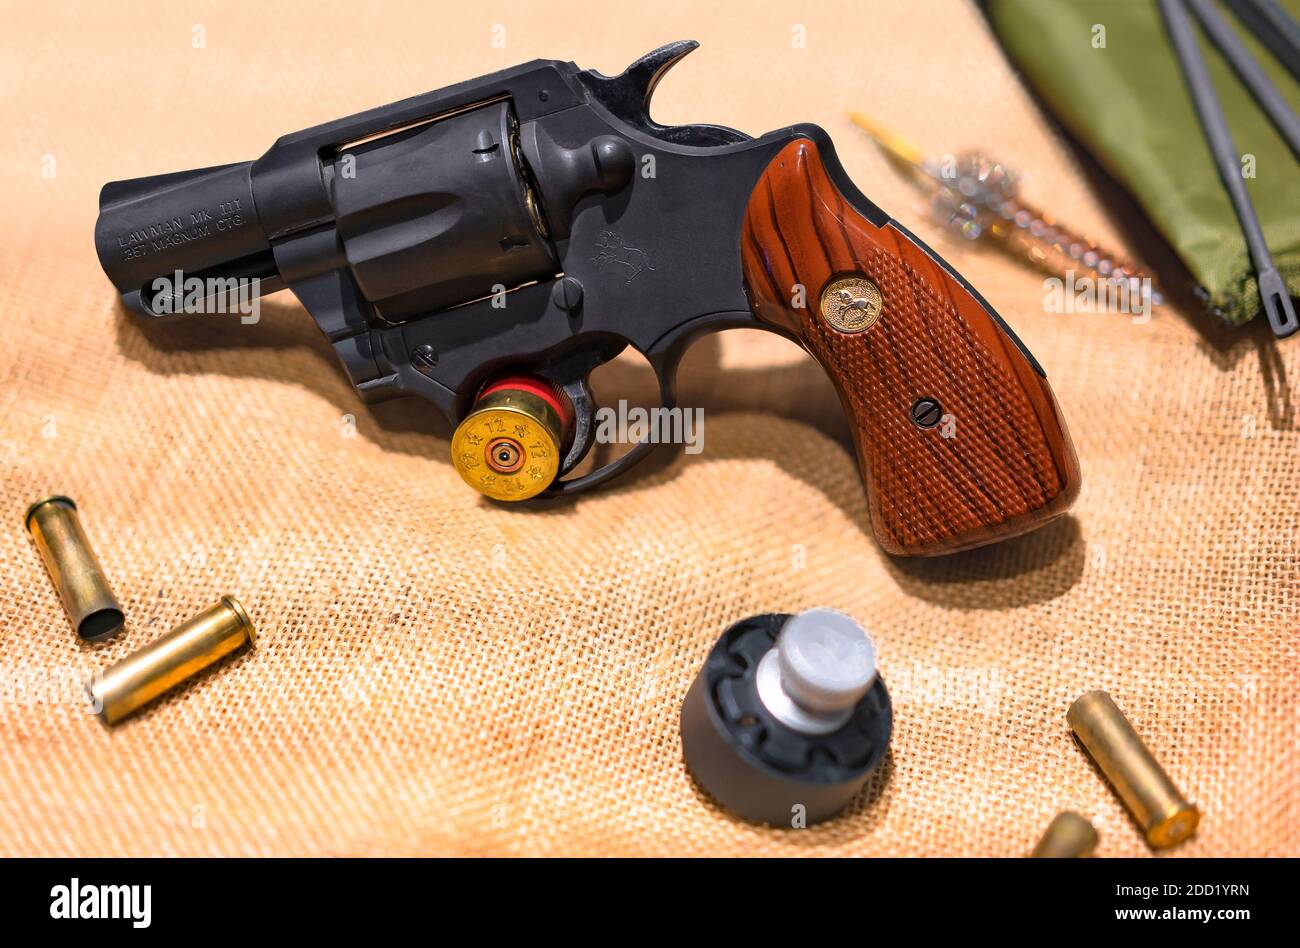 tokyo, japon - novembre 10 2020 : réplique d'un revolver américain Colt Lawman MK Ⅲ 357 Magnum CGT calibre de 2 pouces avec chargeur de vitesse, cartouche Banque D'Images